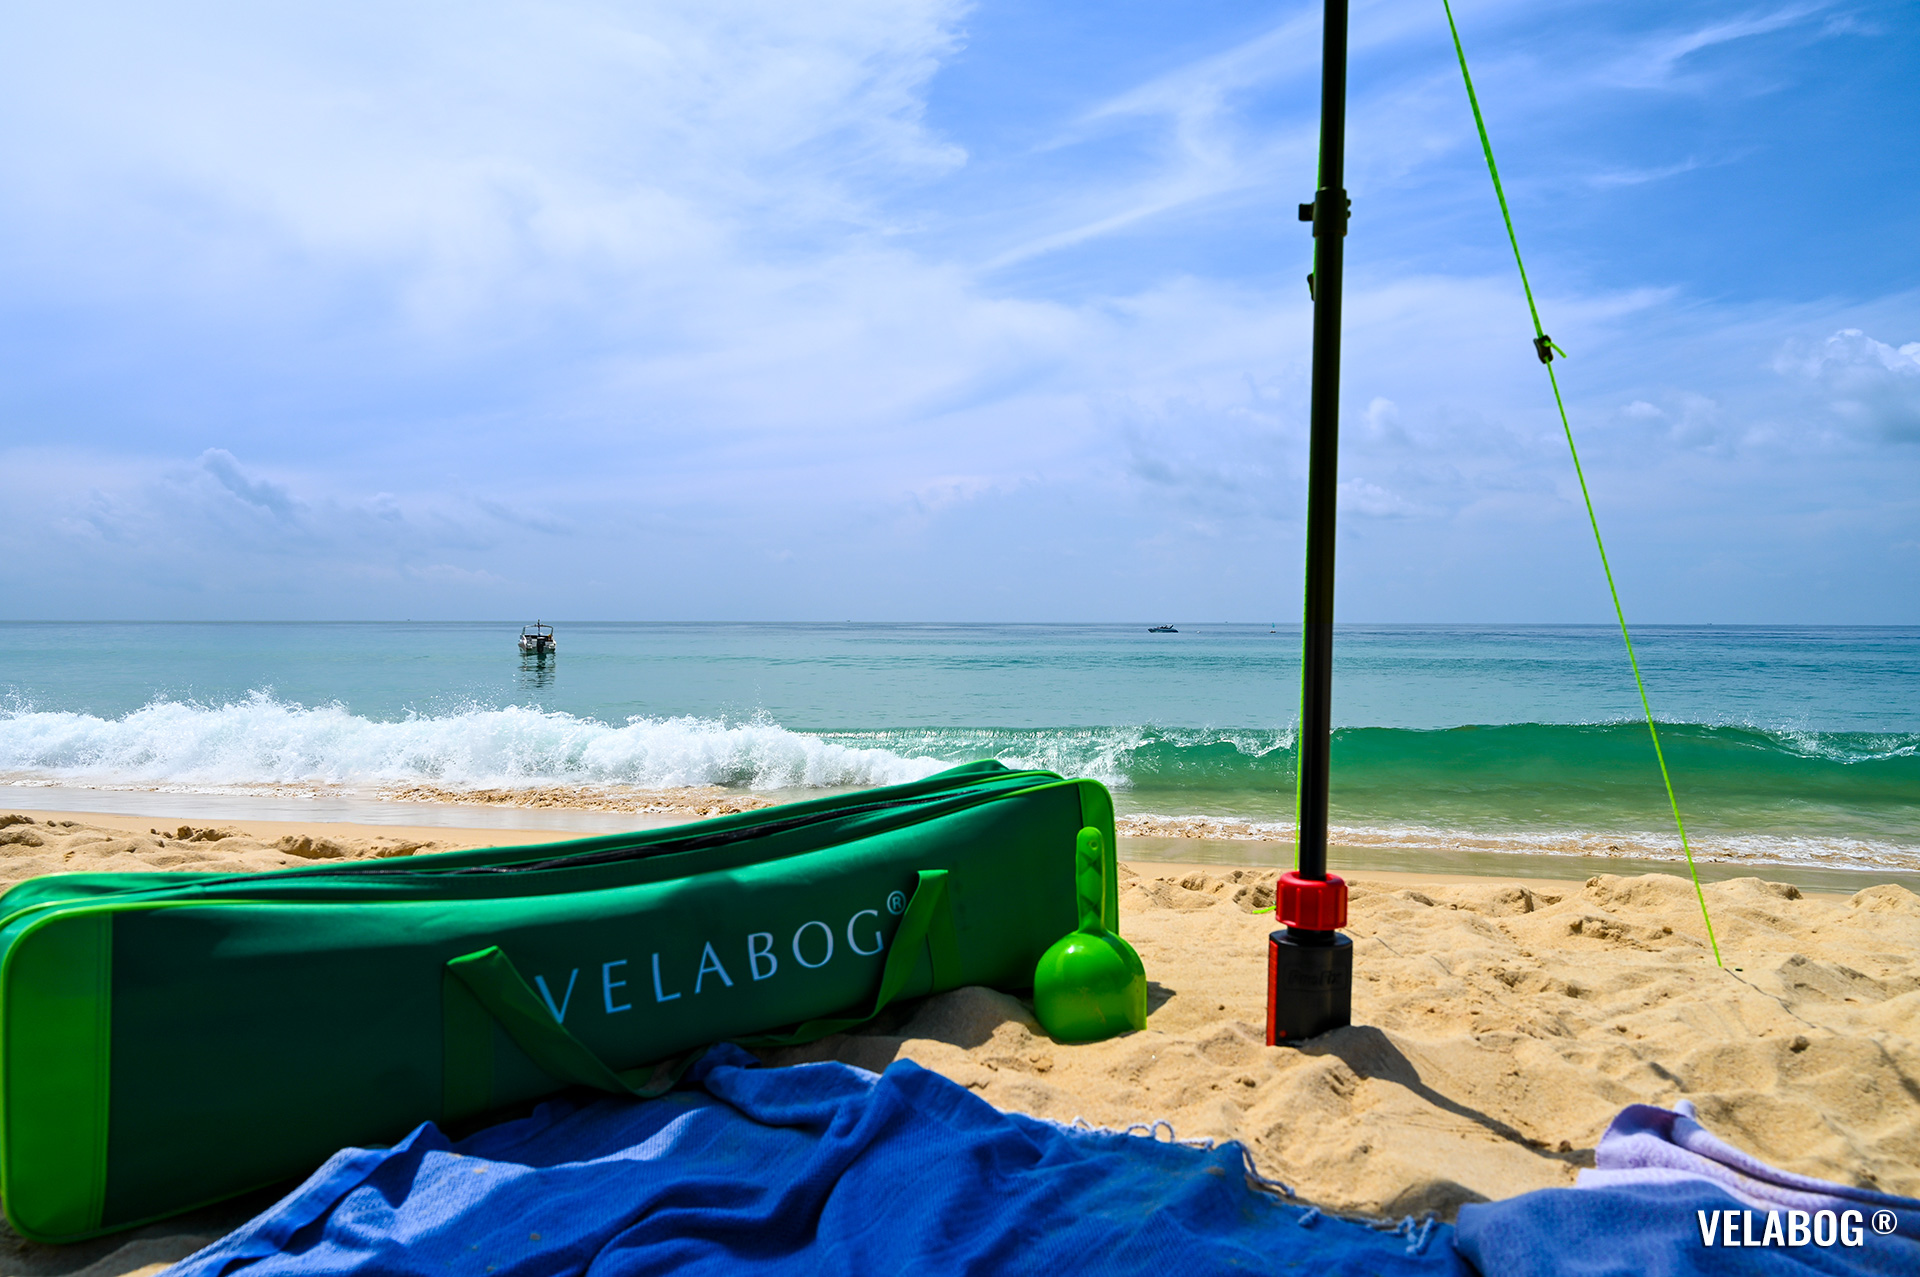 Velabog просторная прочная зеленая сумка. Два отсека: один 6 см, а другой 11 см в ширину. Длина 105 см, общая ширина 17 см, высота 22 см. Много места для всего, что вы хотите взять с собой на пляж.